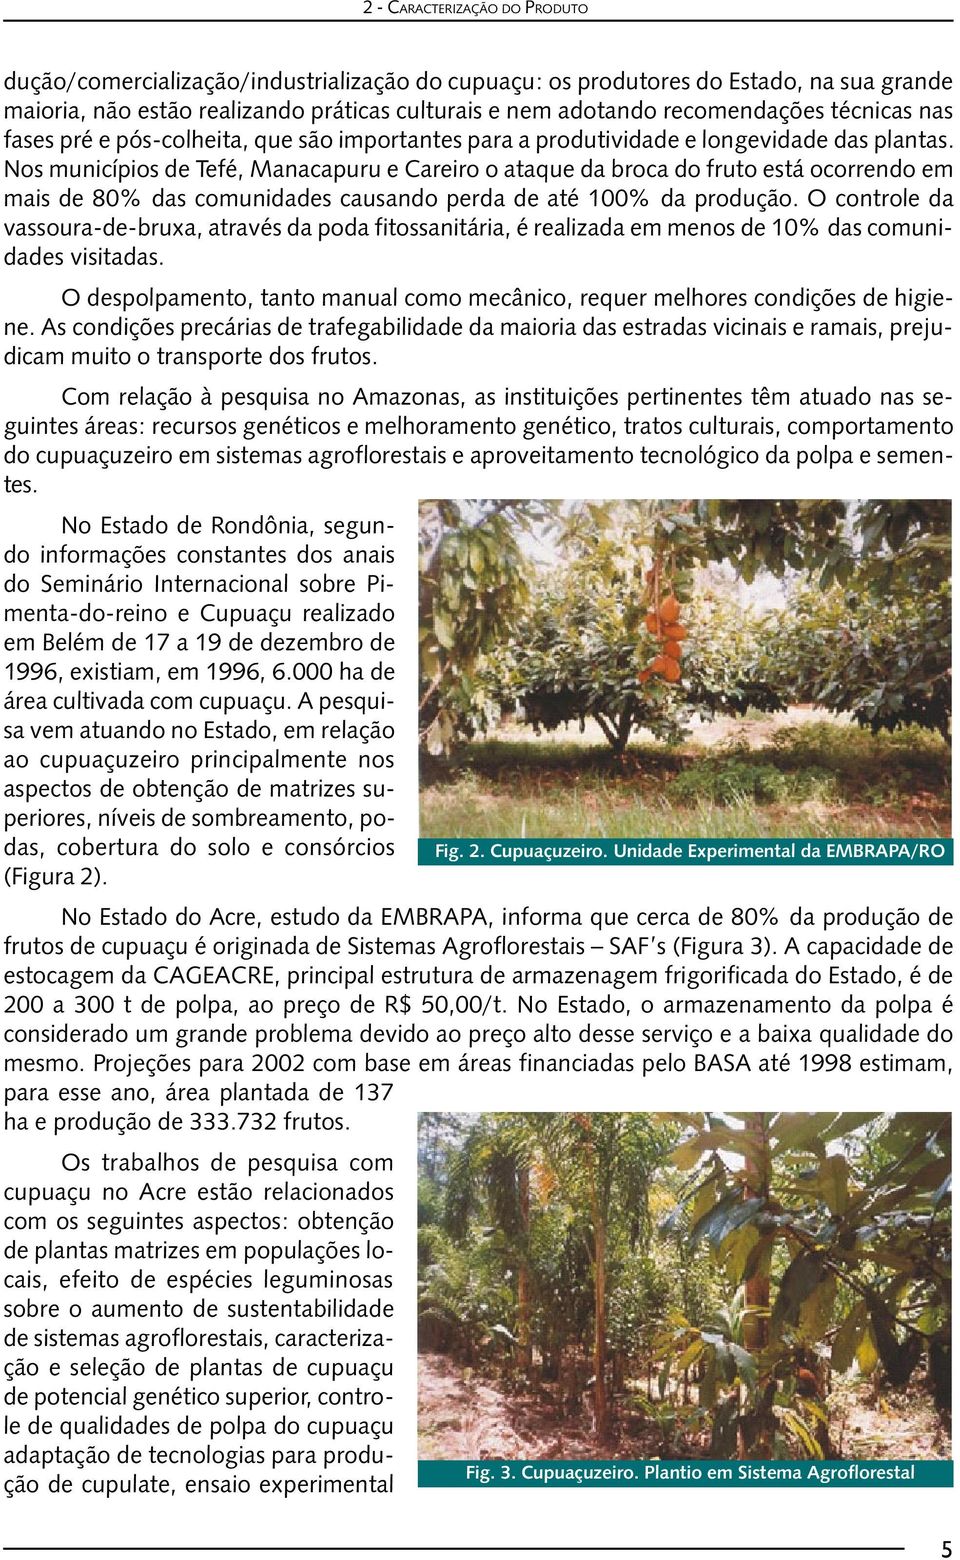 Nos municípios de Tefé, Manacapuru e Careiro o ataque da broca do fruto está ocorrendo em mais de 80% das comunidades causando perda de até 100% da produção.